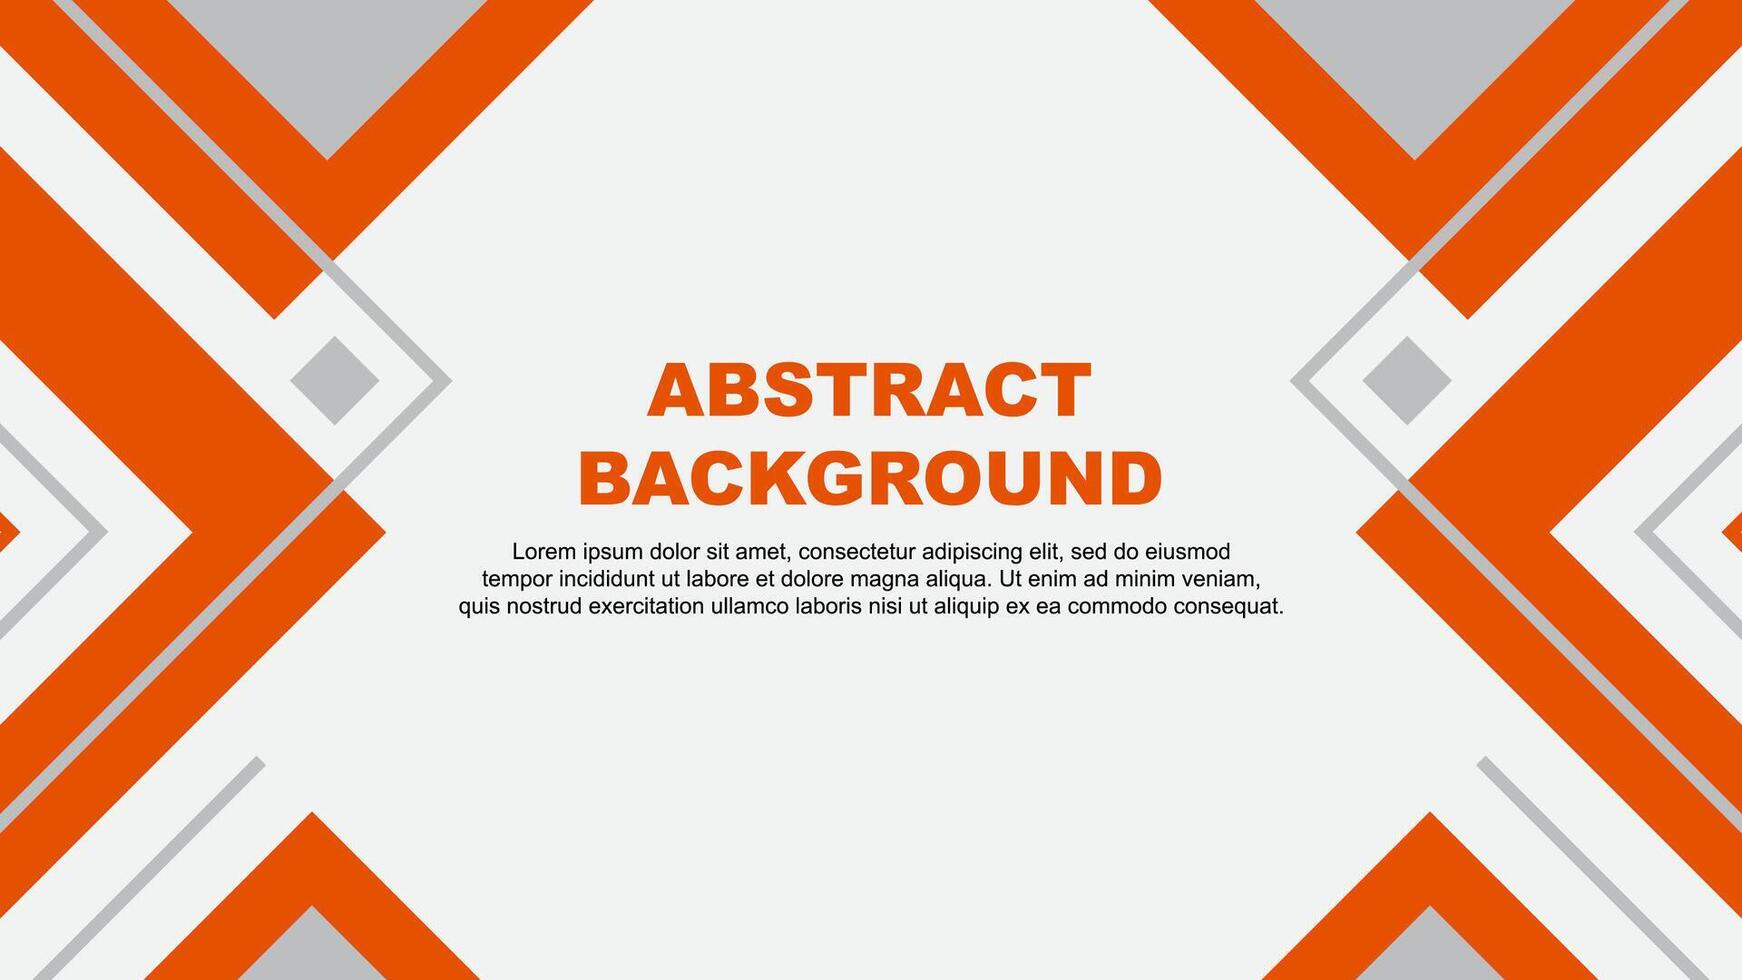 Abstract Orange Background Design Template. Banner Wallpaper Vector Illustration. Orange Illustration